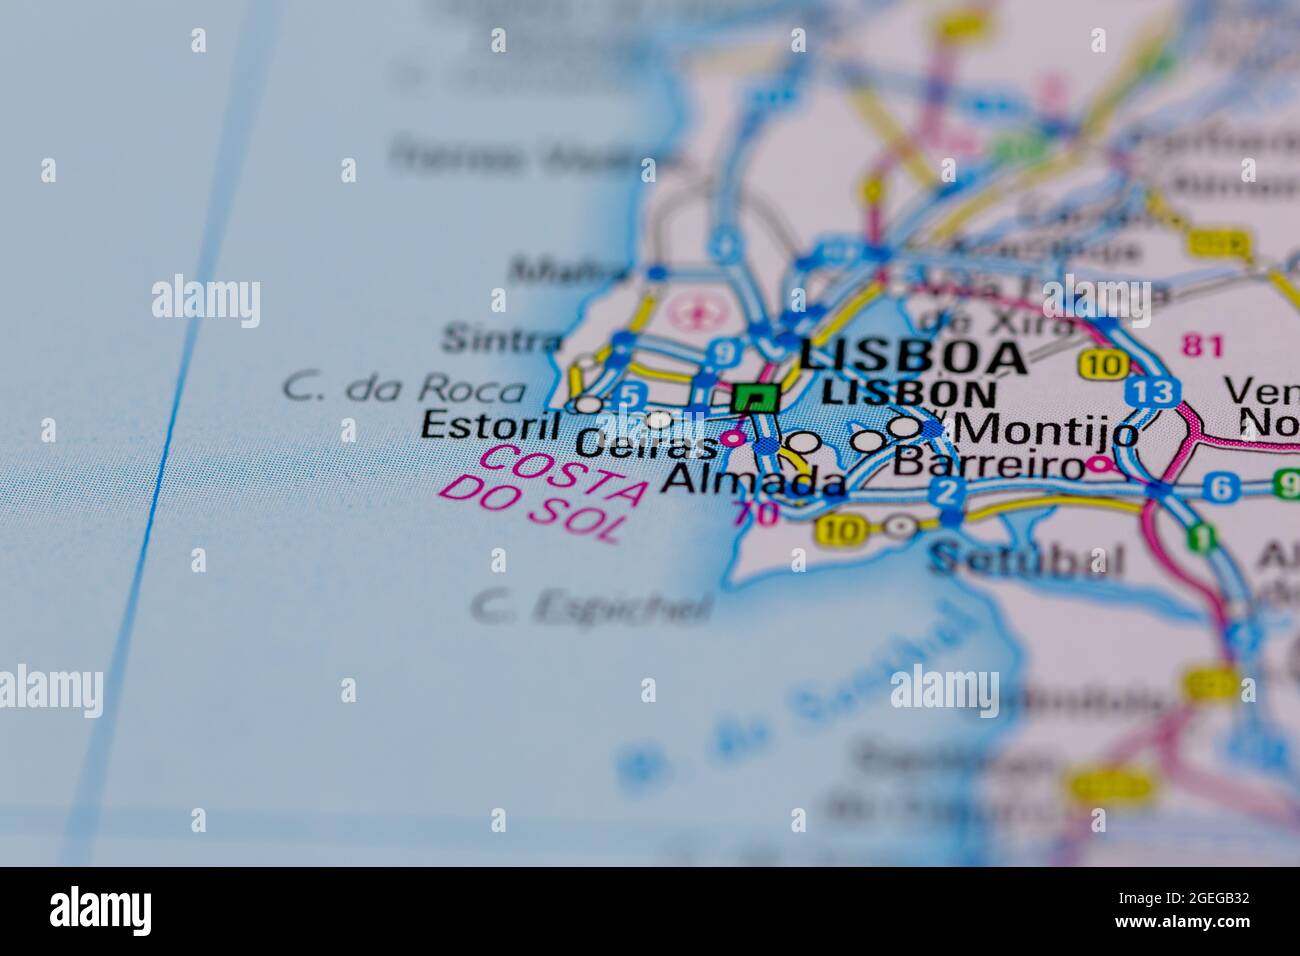 Oeiras Portugal aparece en un mapa de carreteras o en un mapa geográfico Foto de stock